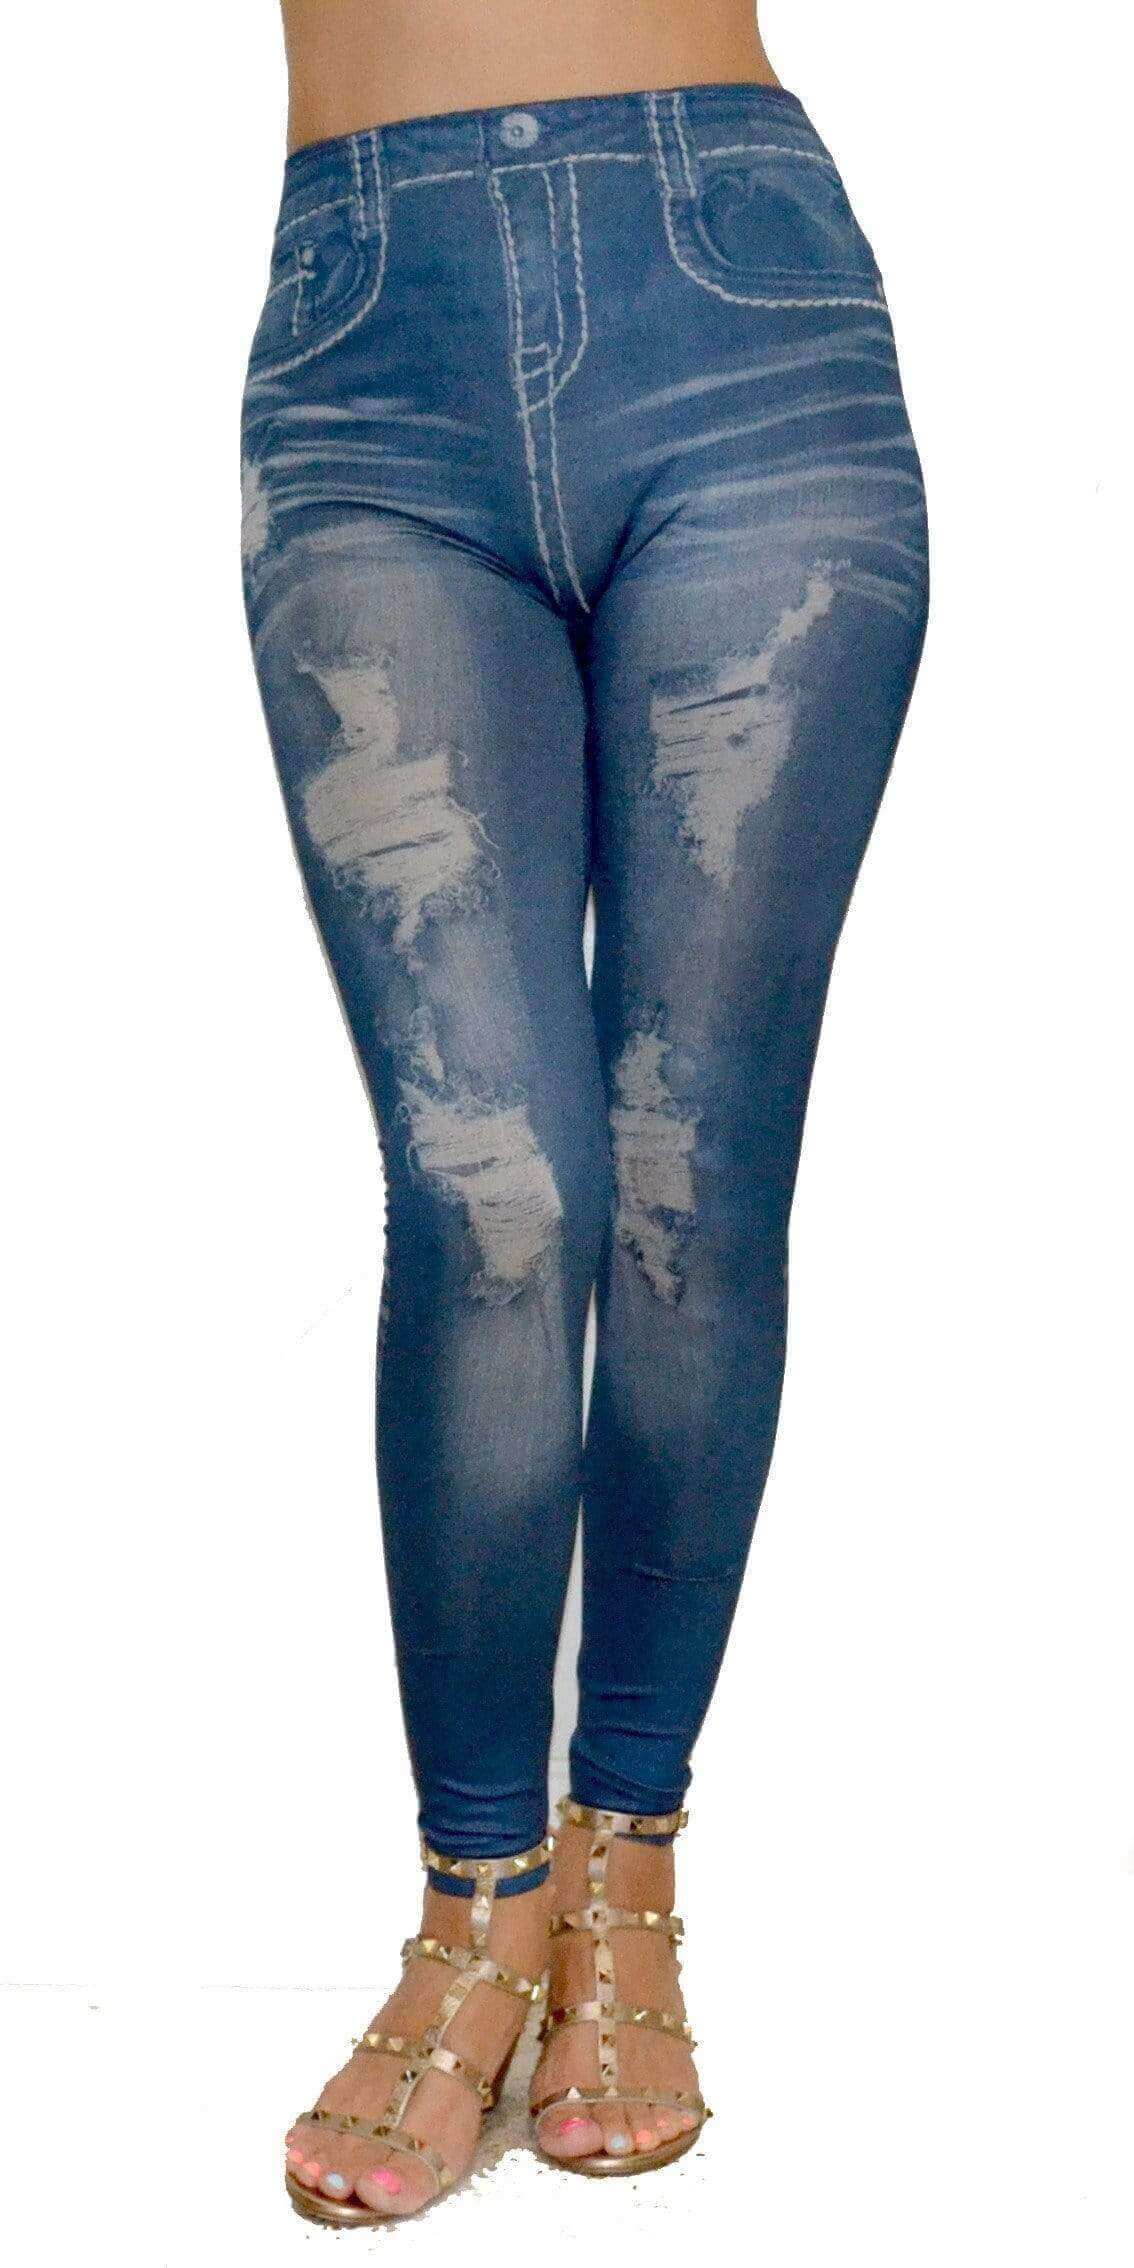 Women's Denim Print Jeans Look Slimming Leggings - Walmart.com